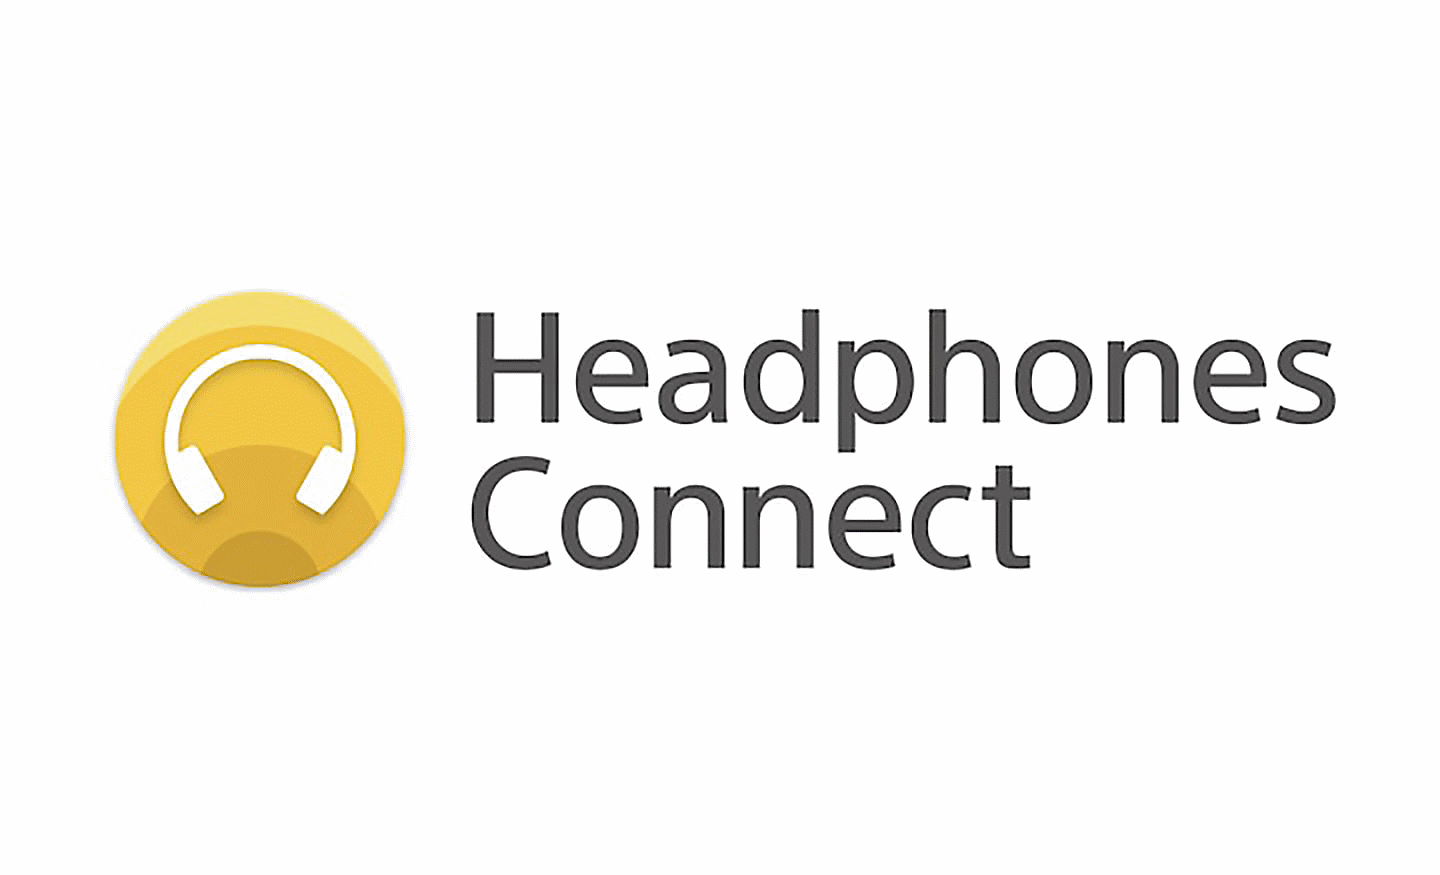 Obrázok loga aplikácie Headphones Connect